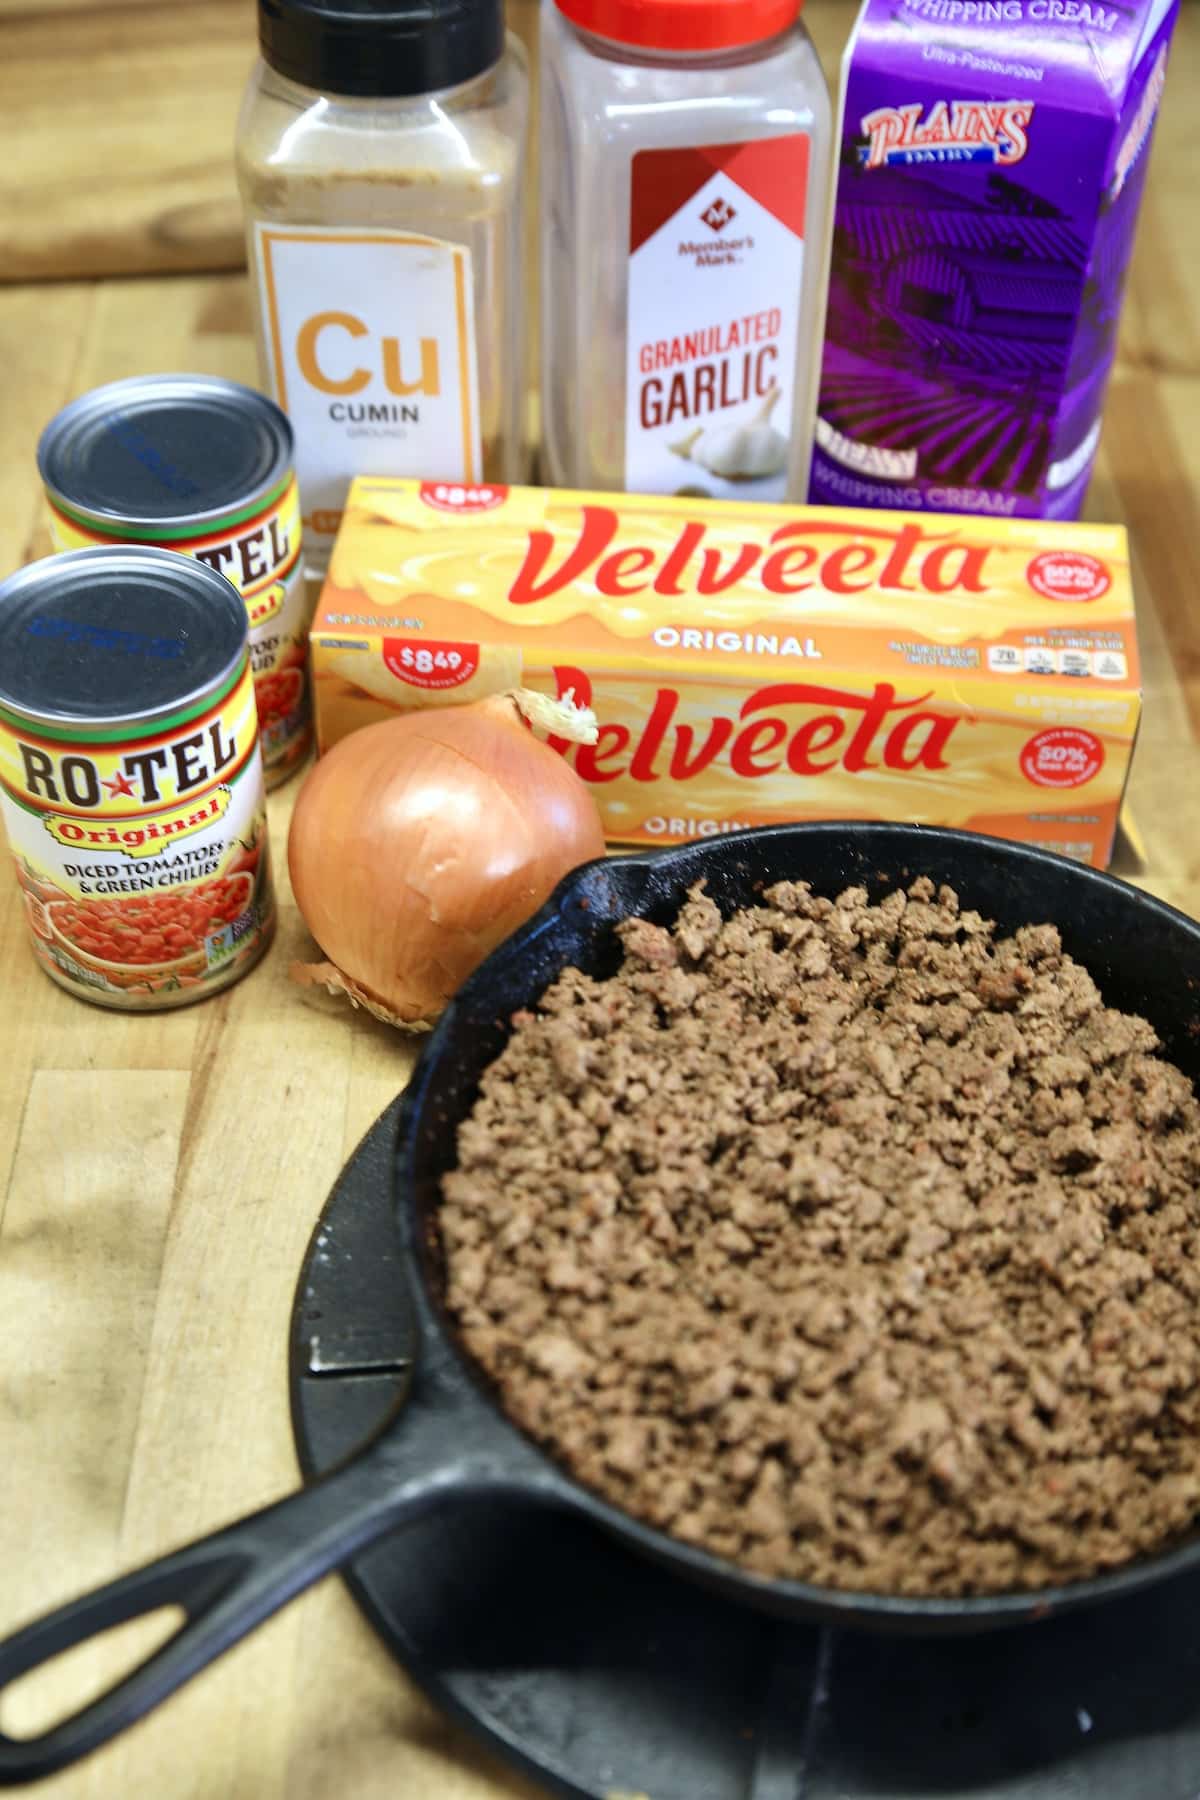 Velveeta and venison queso ingredients.